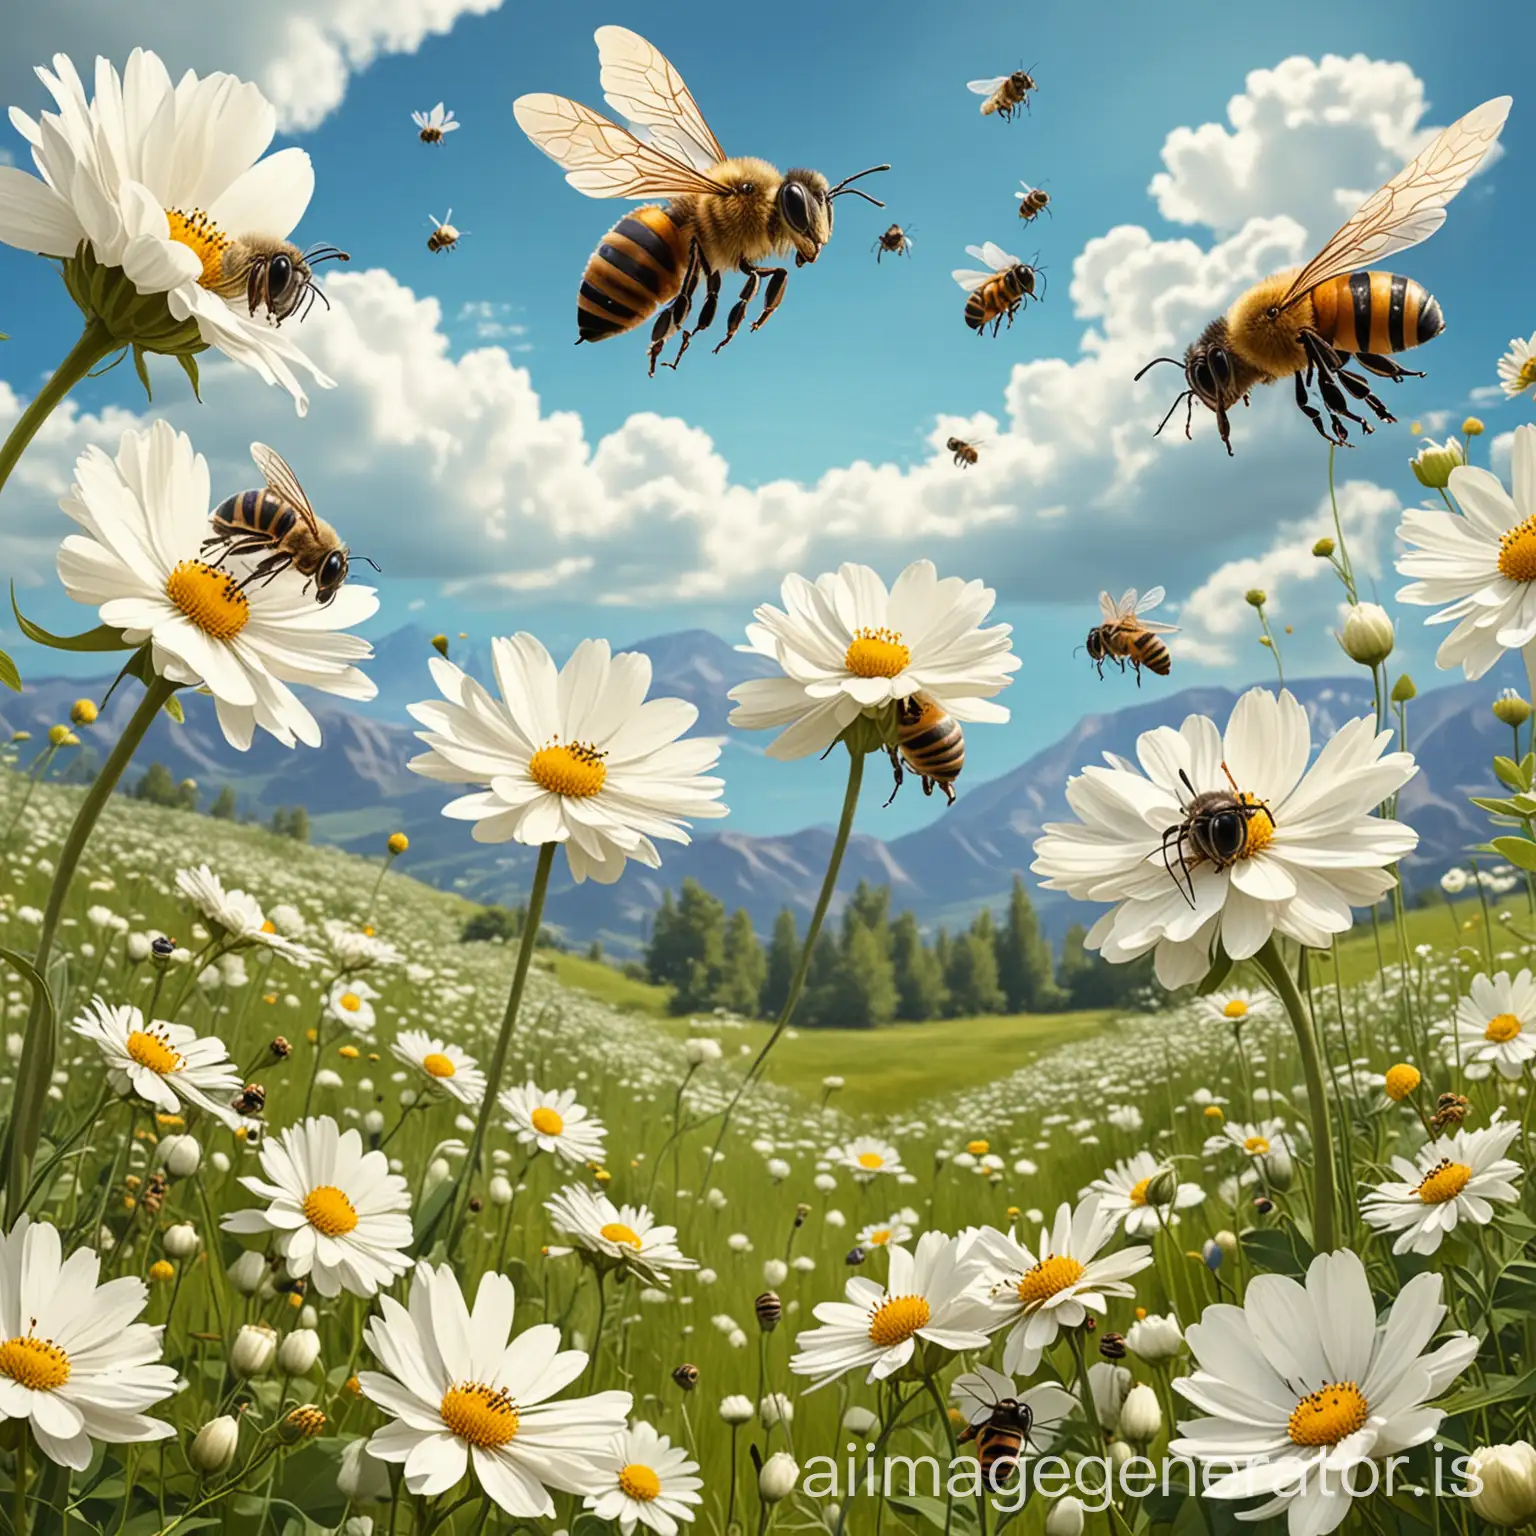 Grupo de abejas en estilo de  caricatura volando y forrajeando por encima de una pradera llena de enormes flores blancas